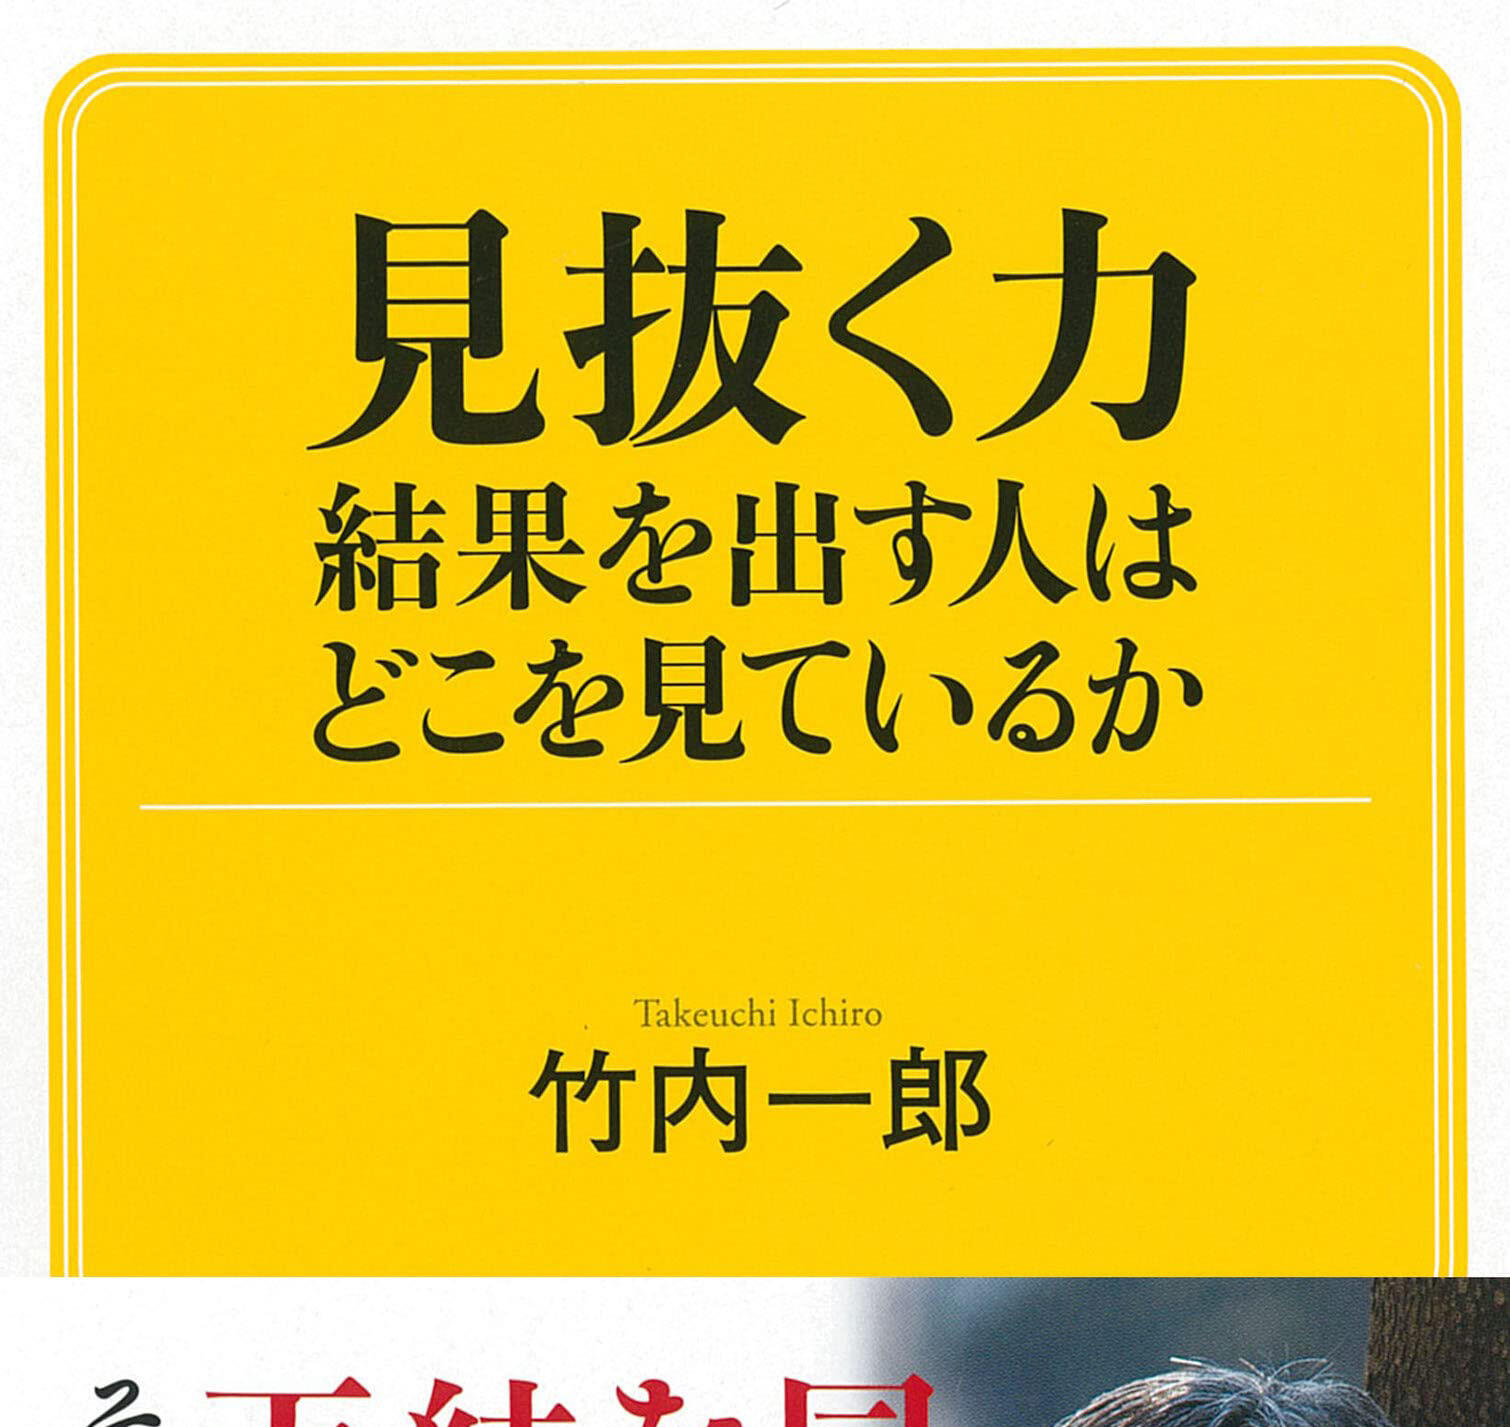 竹内一郎 教授が執筆した『見抜く力 結果を出す人はどこを見ているか』が、1月20日（木）に発売されました。